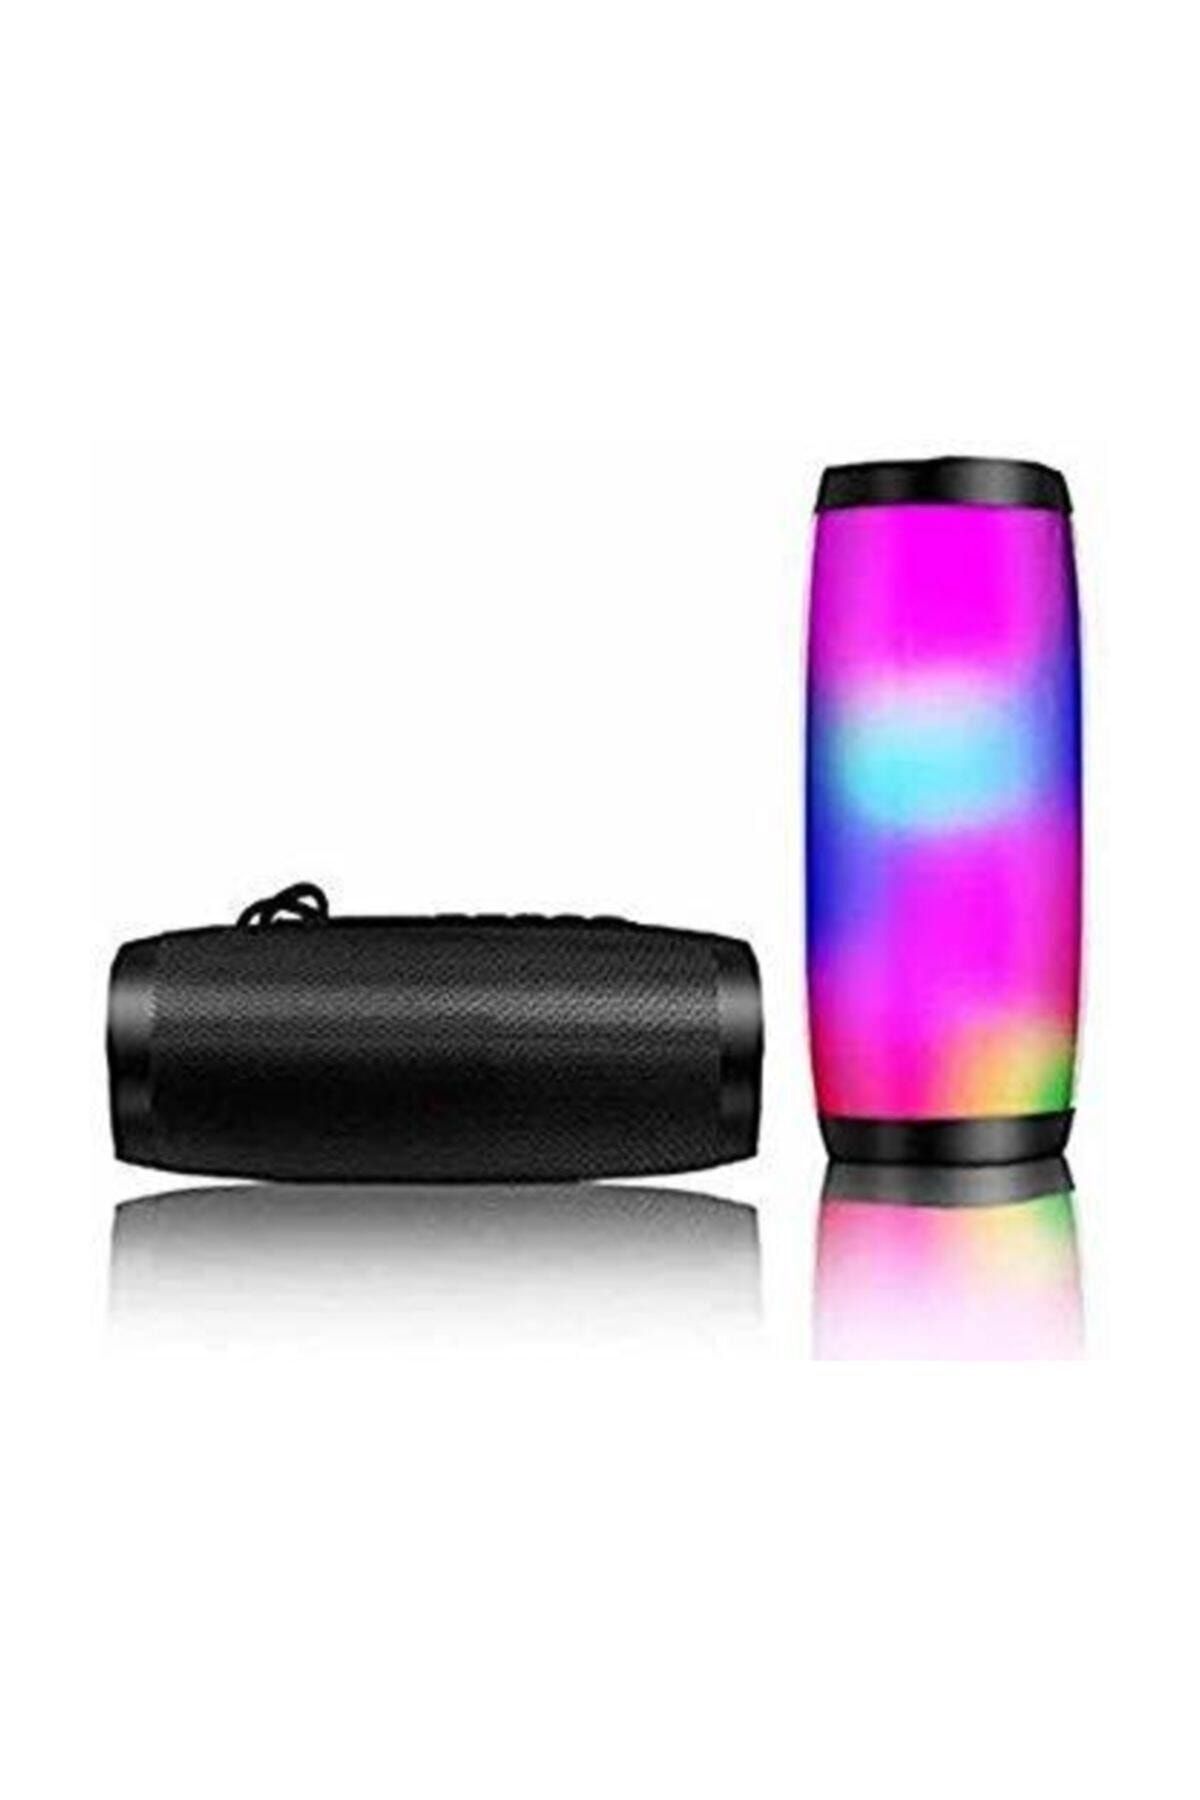 T G Kablosuz Hoparlör Bluetooth Speaker Işıklı Ses Bombası Tg 157 Siyah